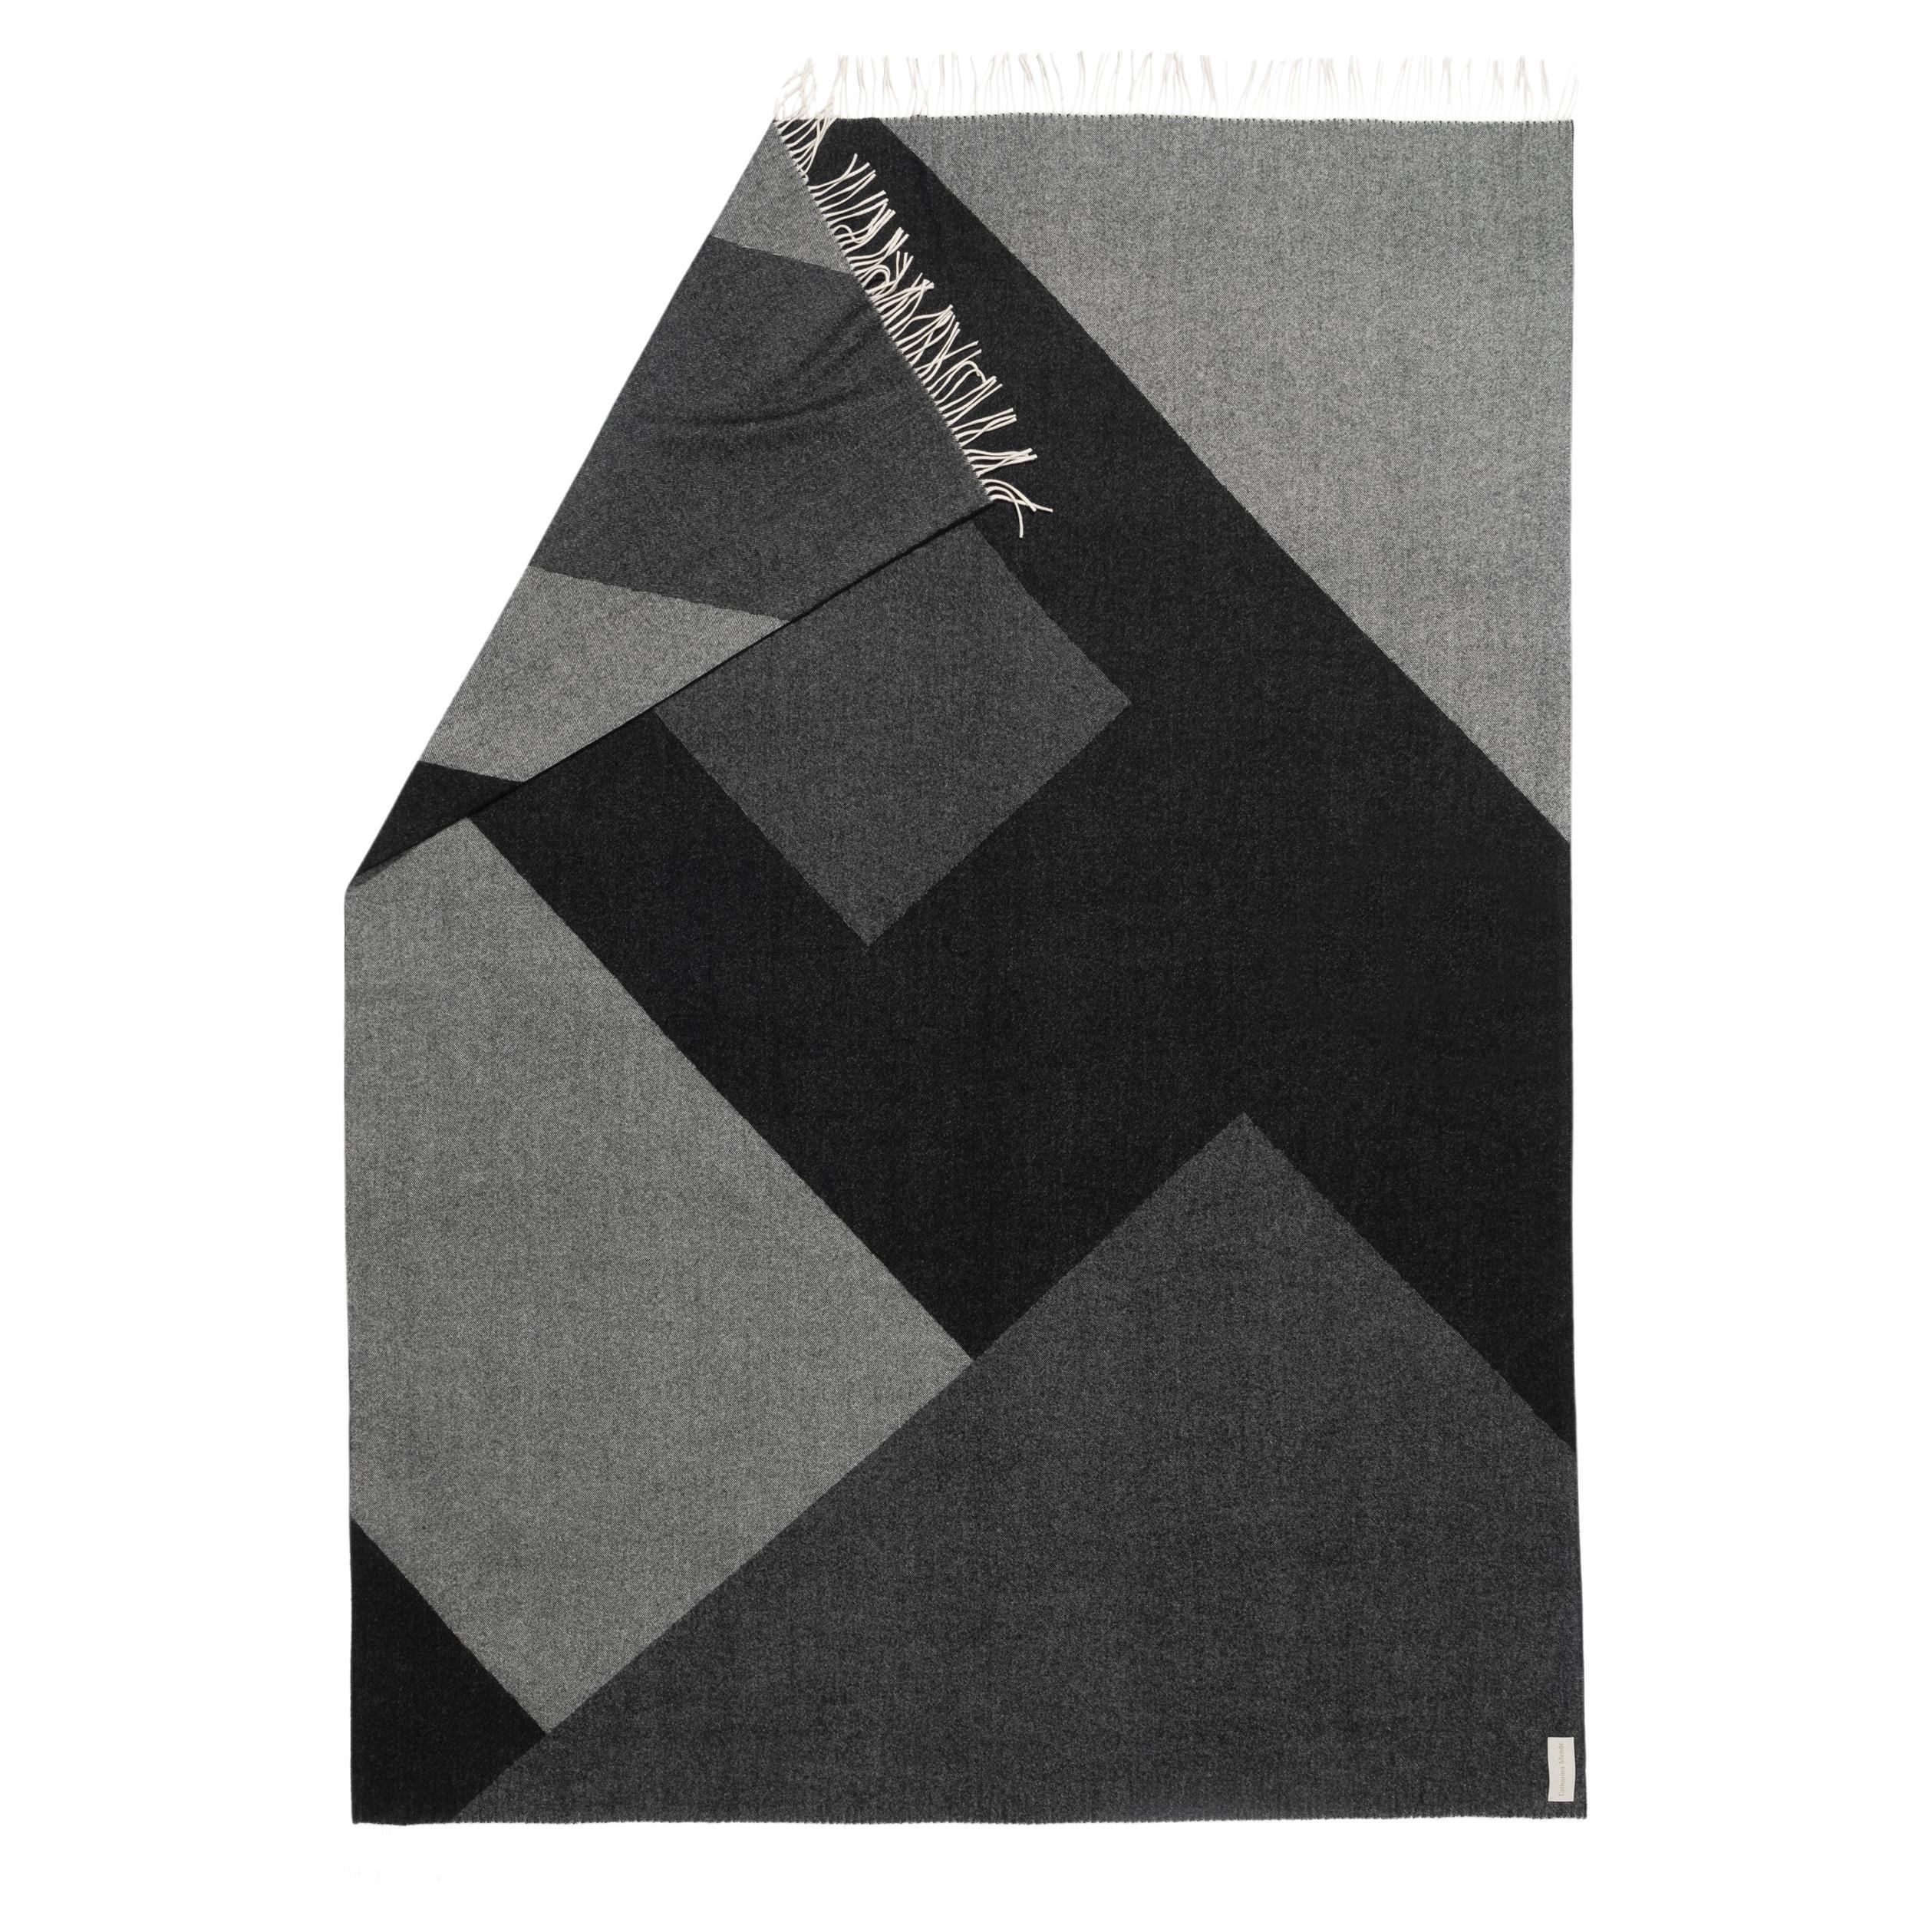 Couverture géométrique grise tissée en mérinos et cachemire de Catharina Mende